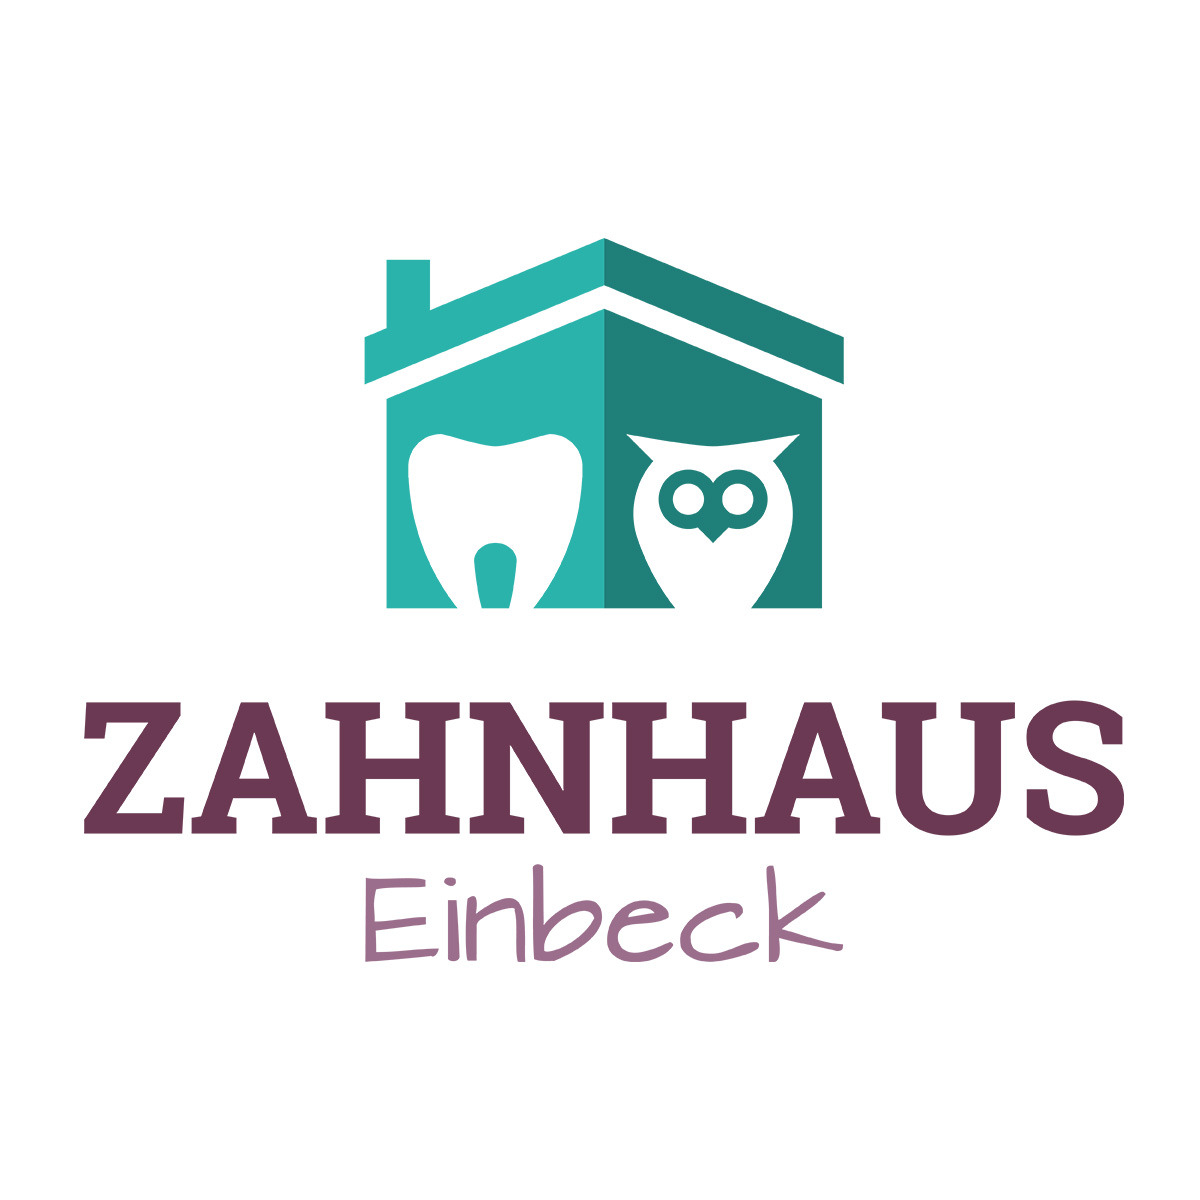 MVZ Zahnhaus Einbeck | Claudia Zimmer-Mildner Einbeck 05561 9417766